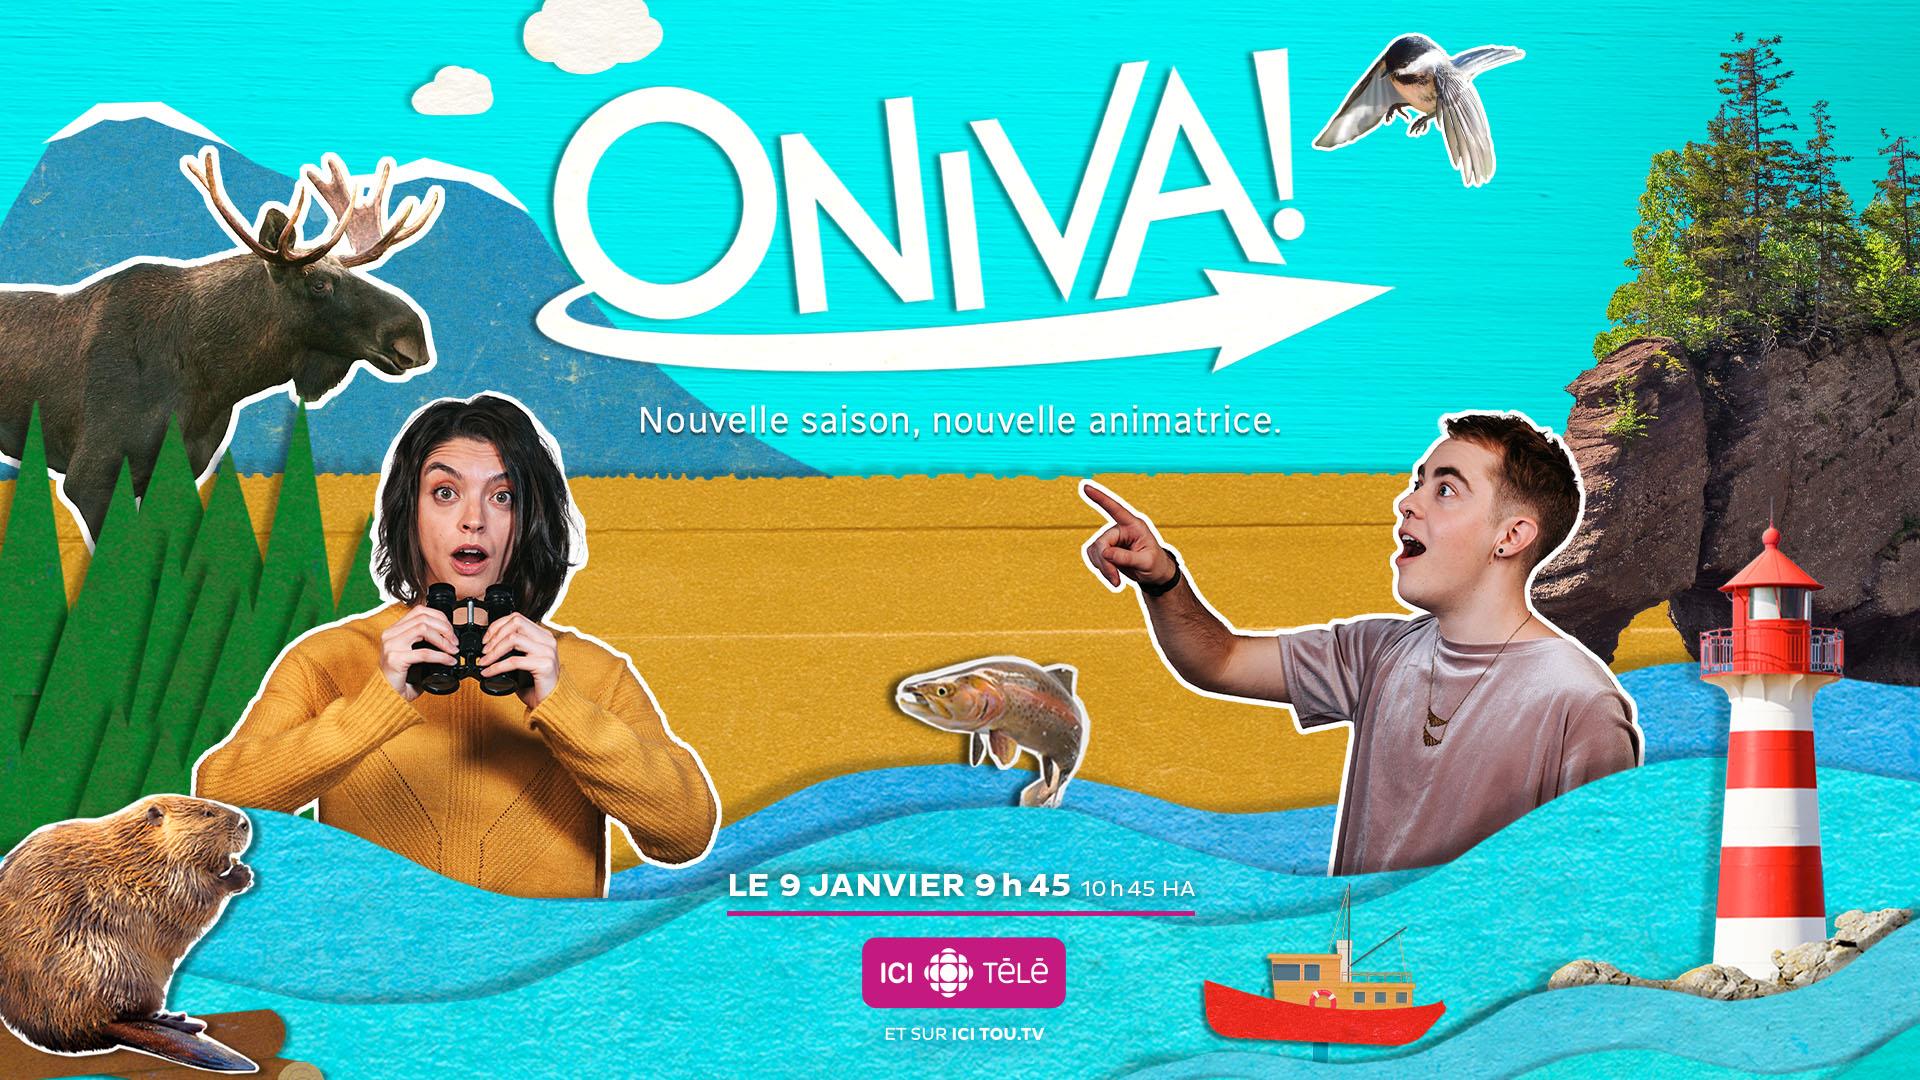 Une nouvelle saison débute pour ONIVA!
Une nouvelle saison débute pour ONIVA!